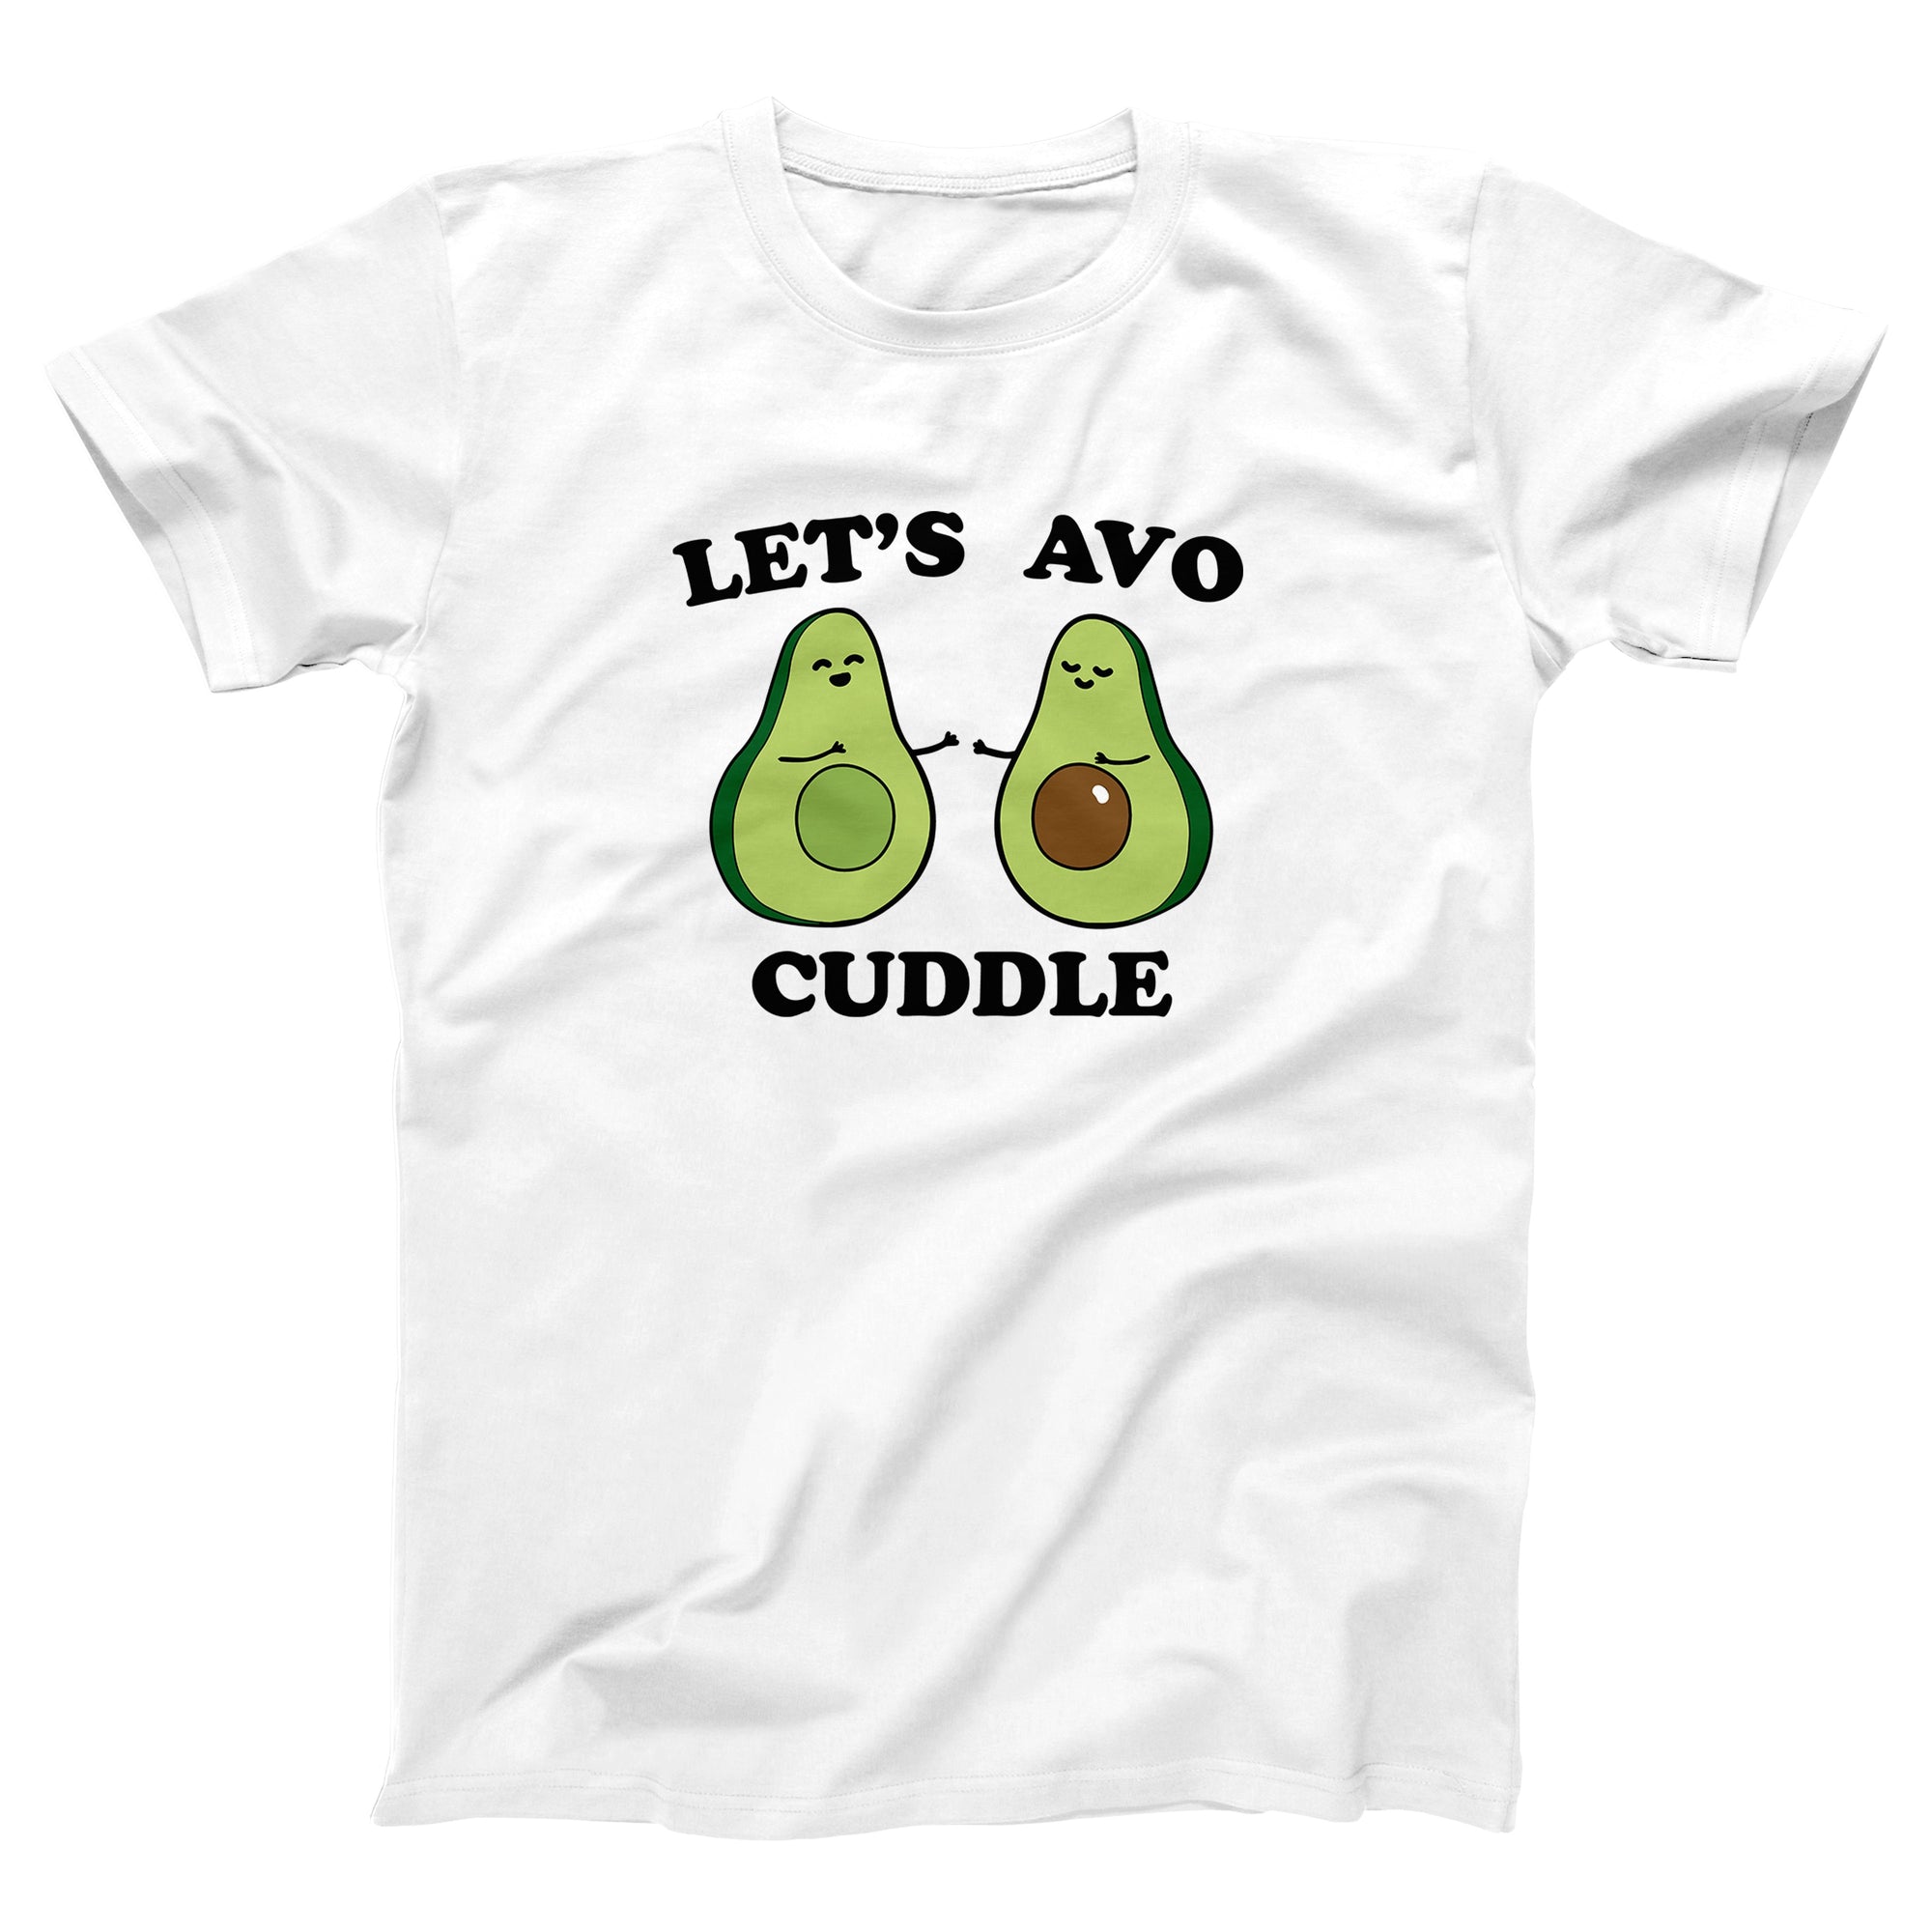 Let's Avocuddle Adult Unisex T-Shirt - Twisted Gorilla